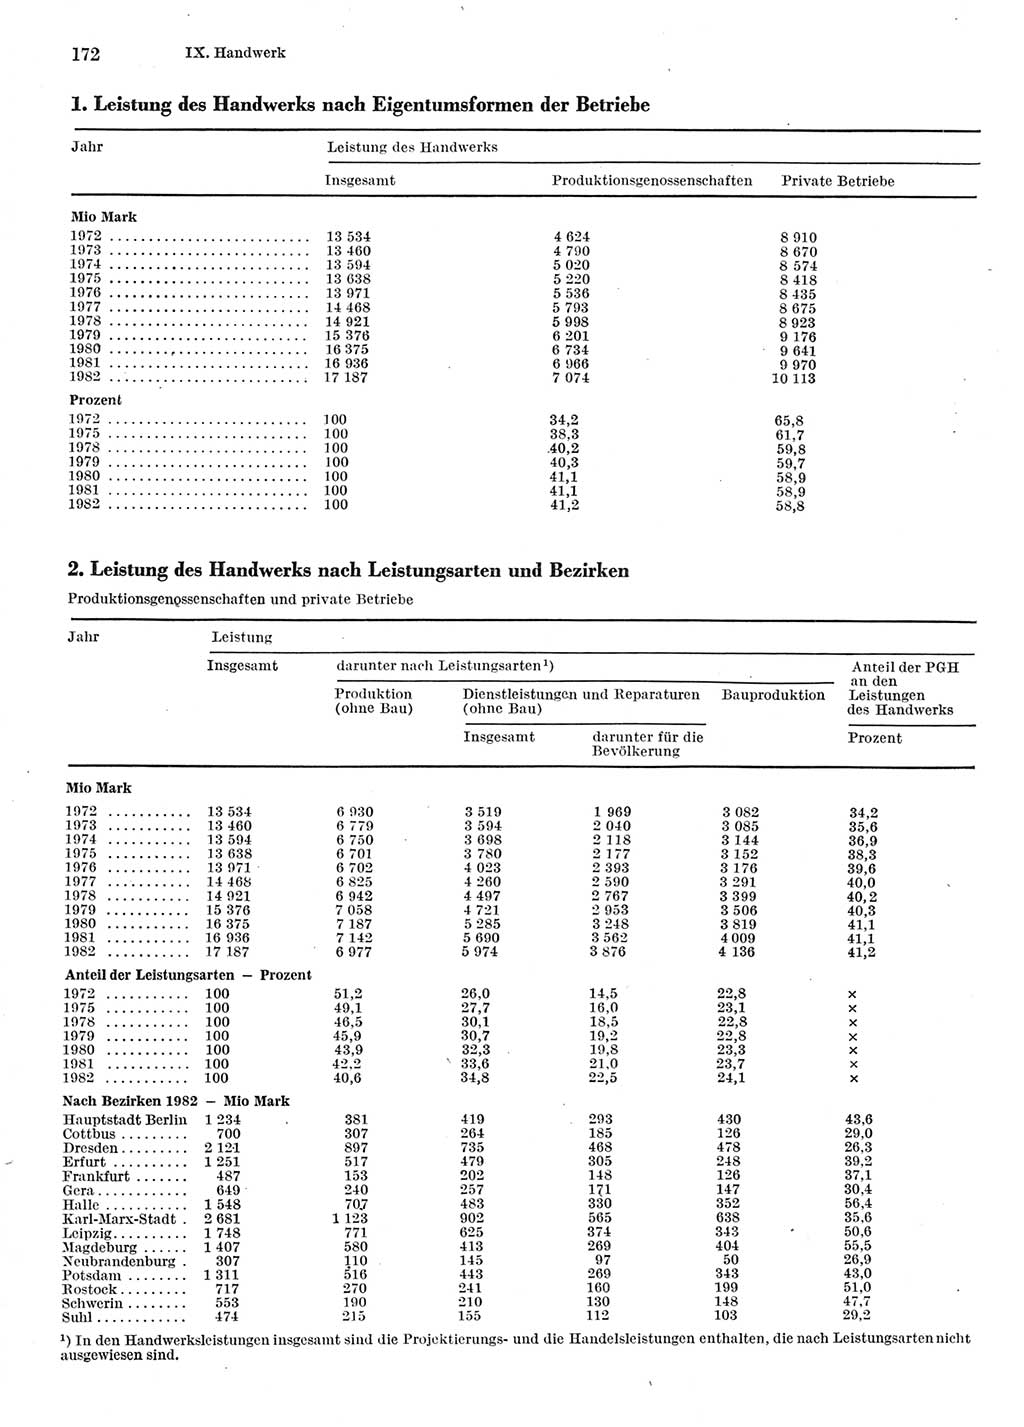 Statistisches Jahrbuch der Deutschen Demokratischen Republik (DDR) 1983, Seite 172 (Stat. Jb. DDR 1983, S. 172)